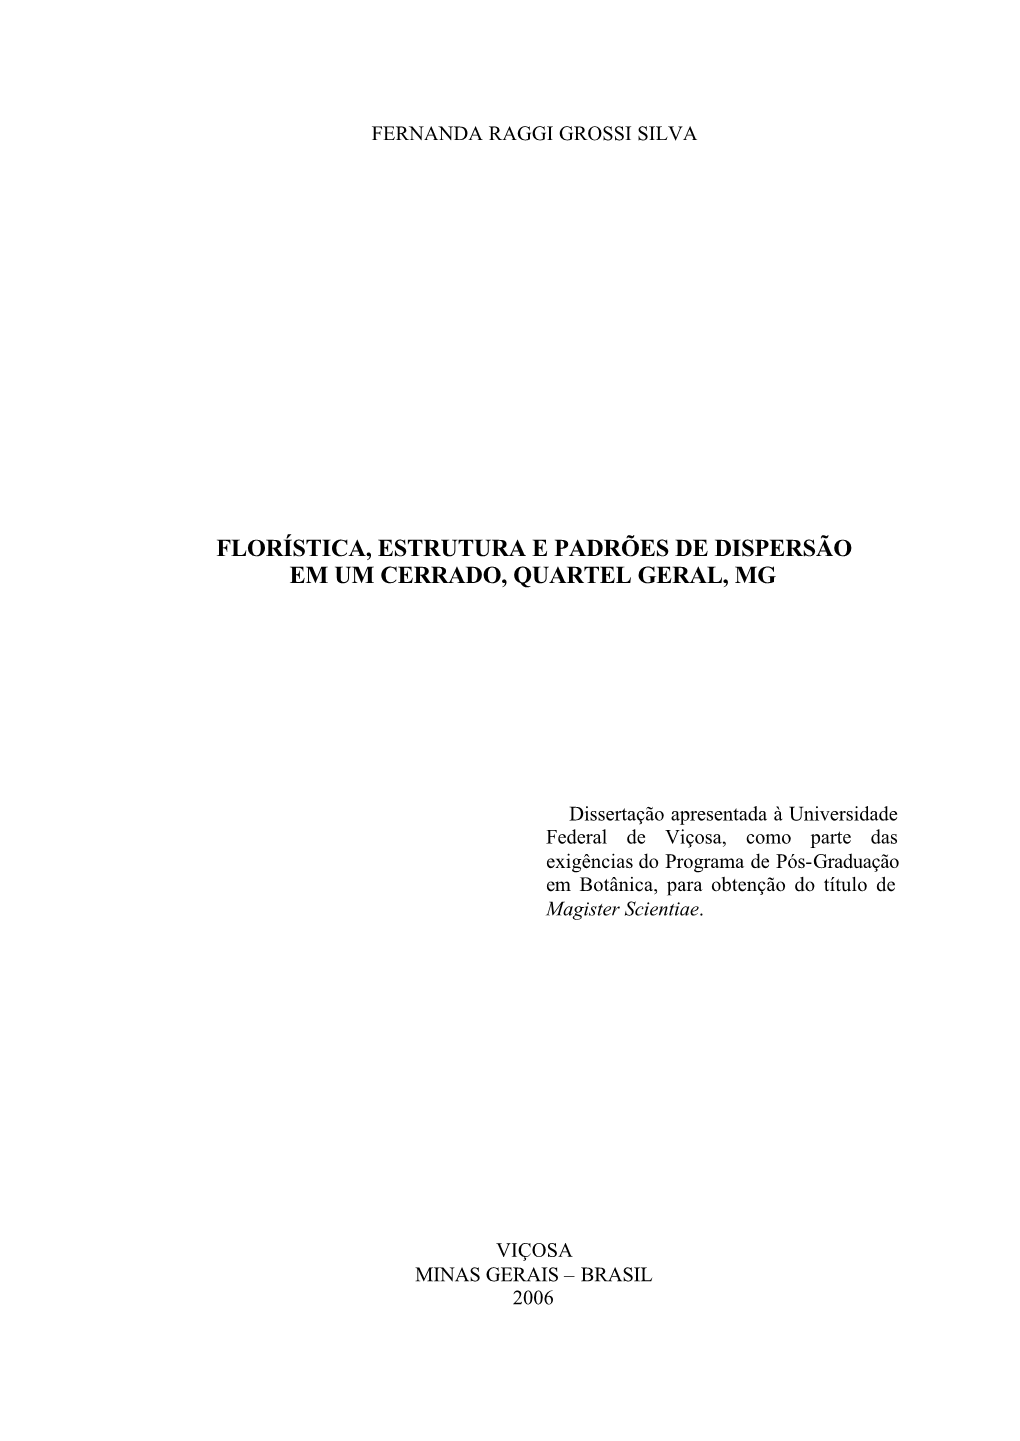 Dissertação Fernanda Raggi Grossi Silva